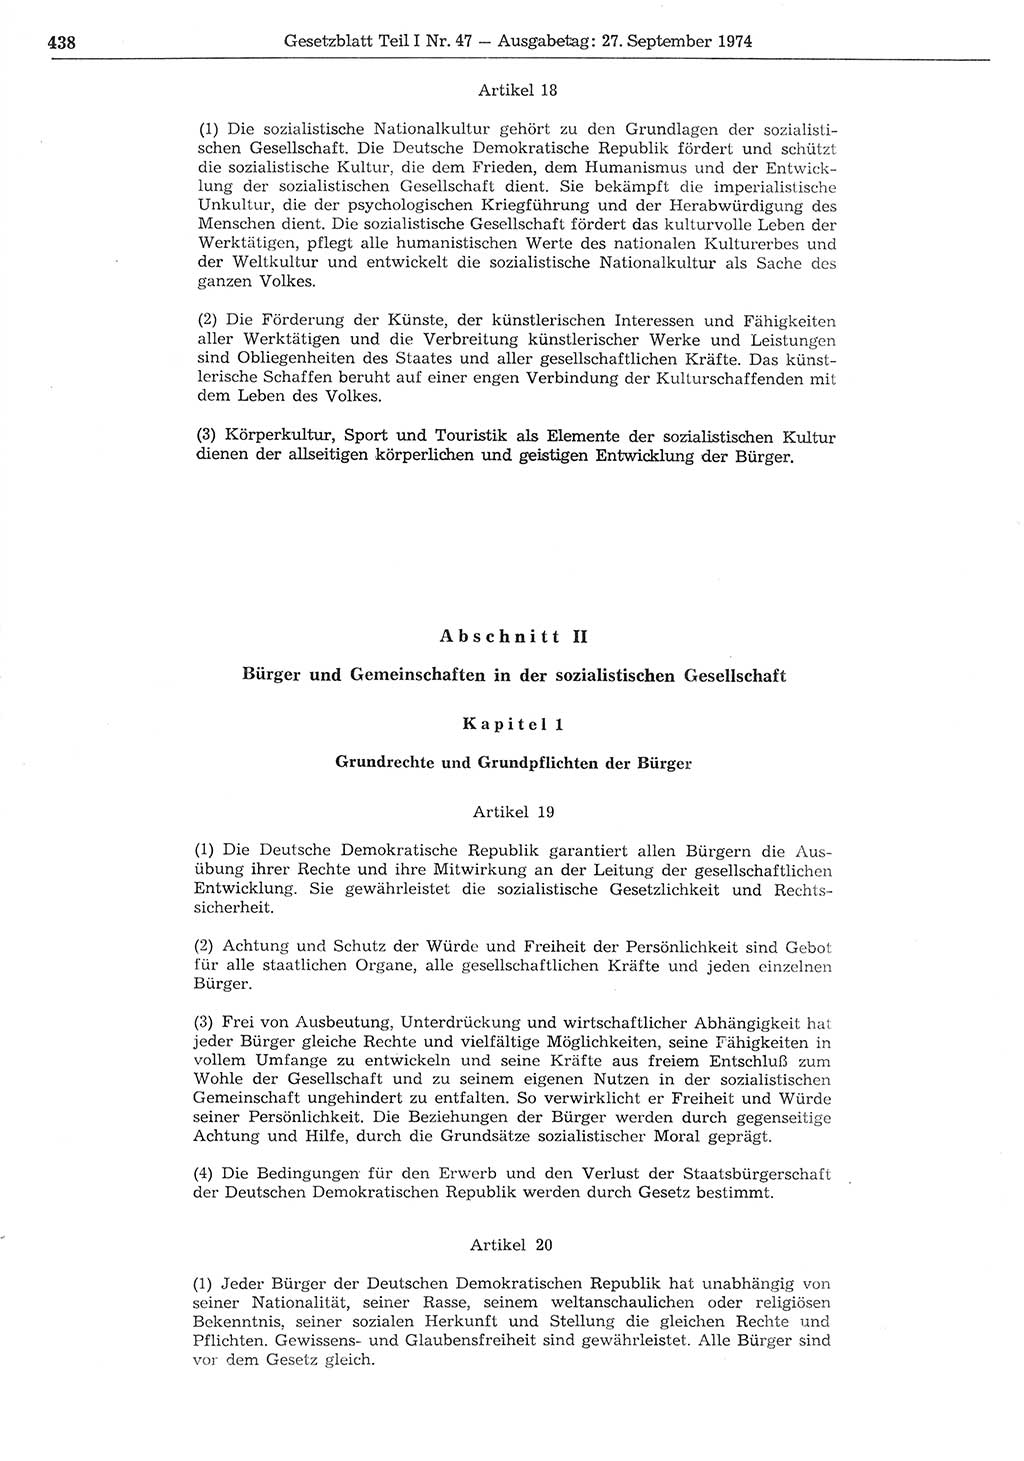 Gesetzblatt (GBl.) der Deutschen Demokratischen Republik (DDR) Teil Ⅰ 1974, Seite 438 (GBl. DDR Ⅰ 1974, S. 438)